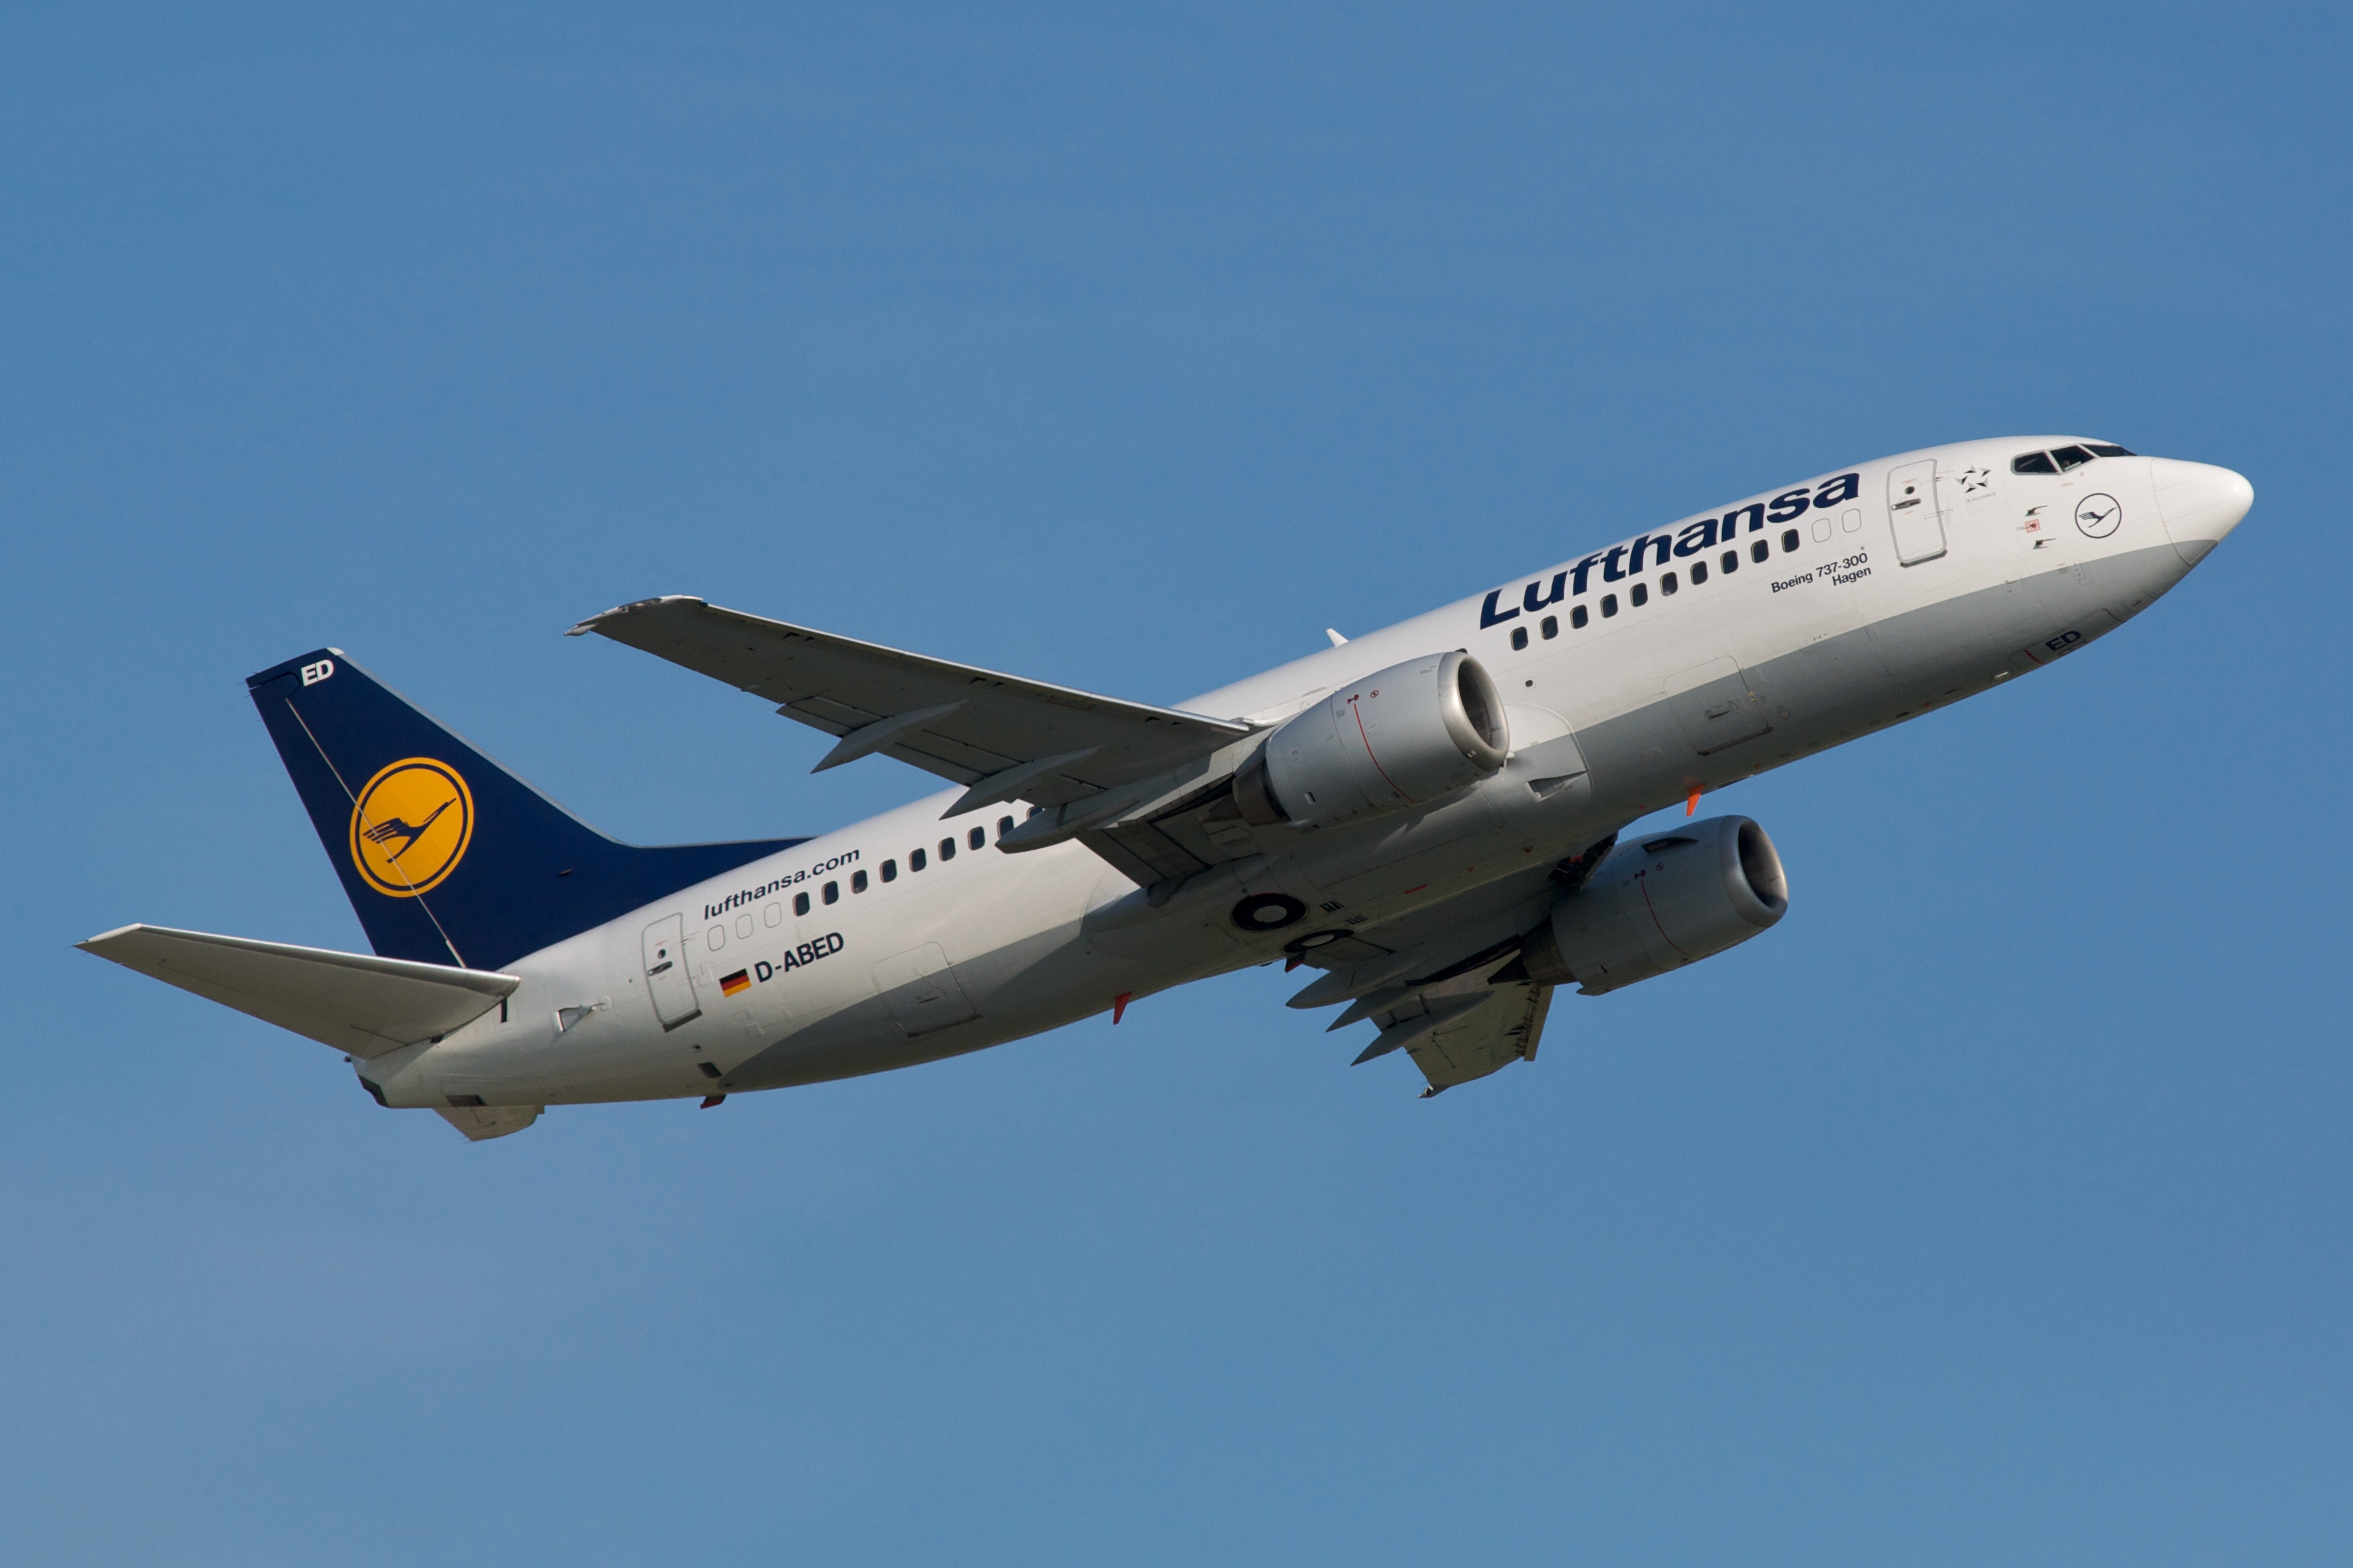 Lufthansa Boeing 737-300 D-ABED departing Düsseldorf Airport